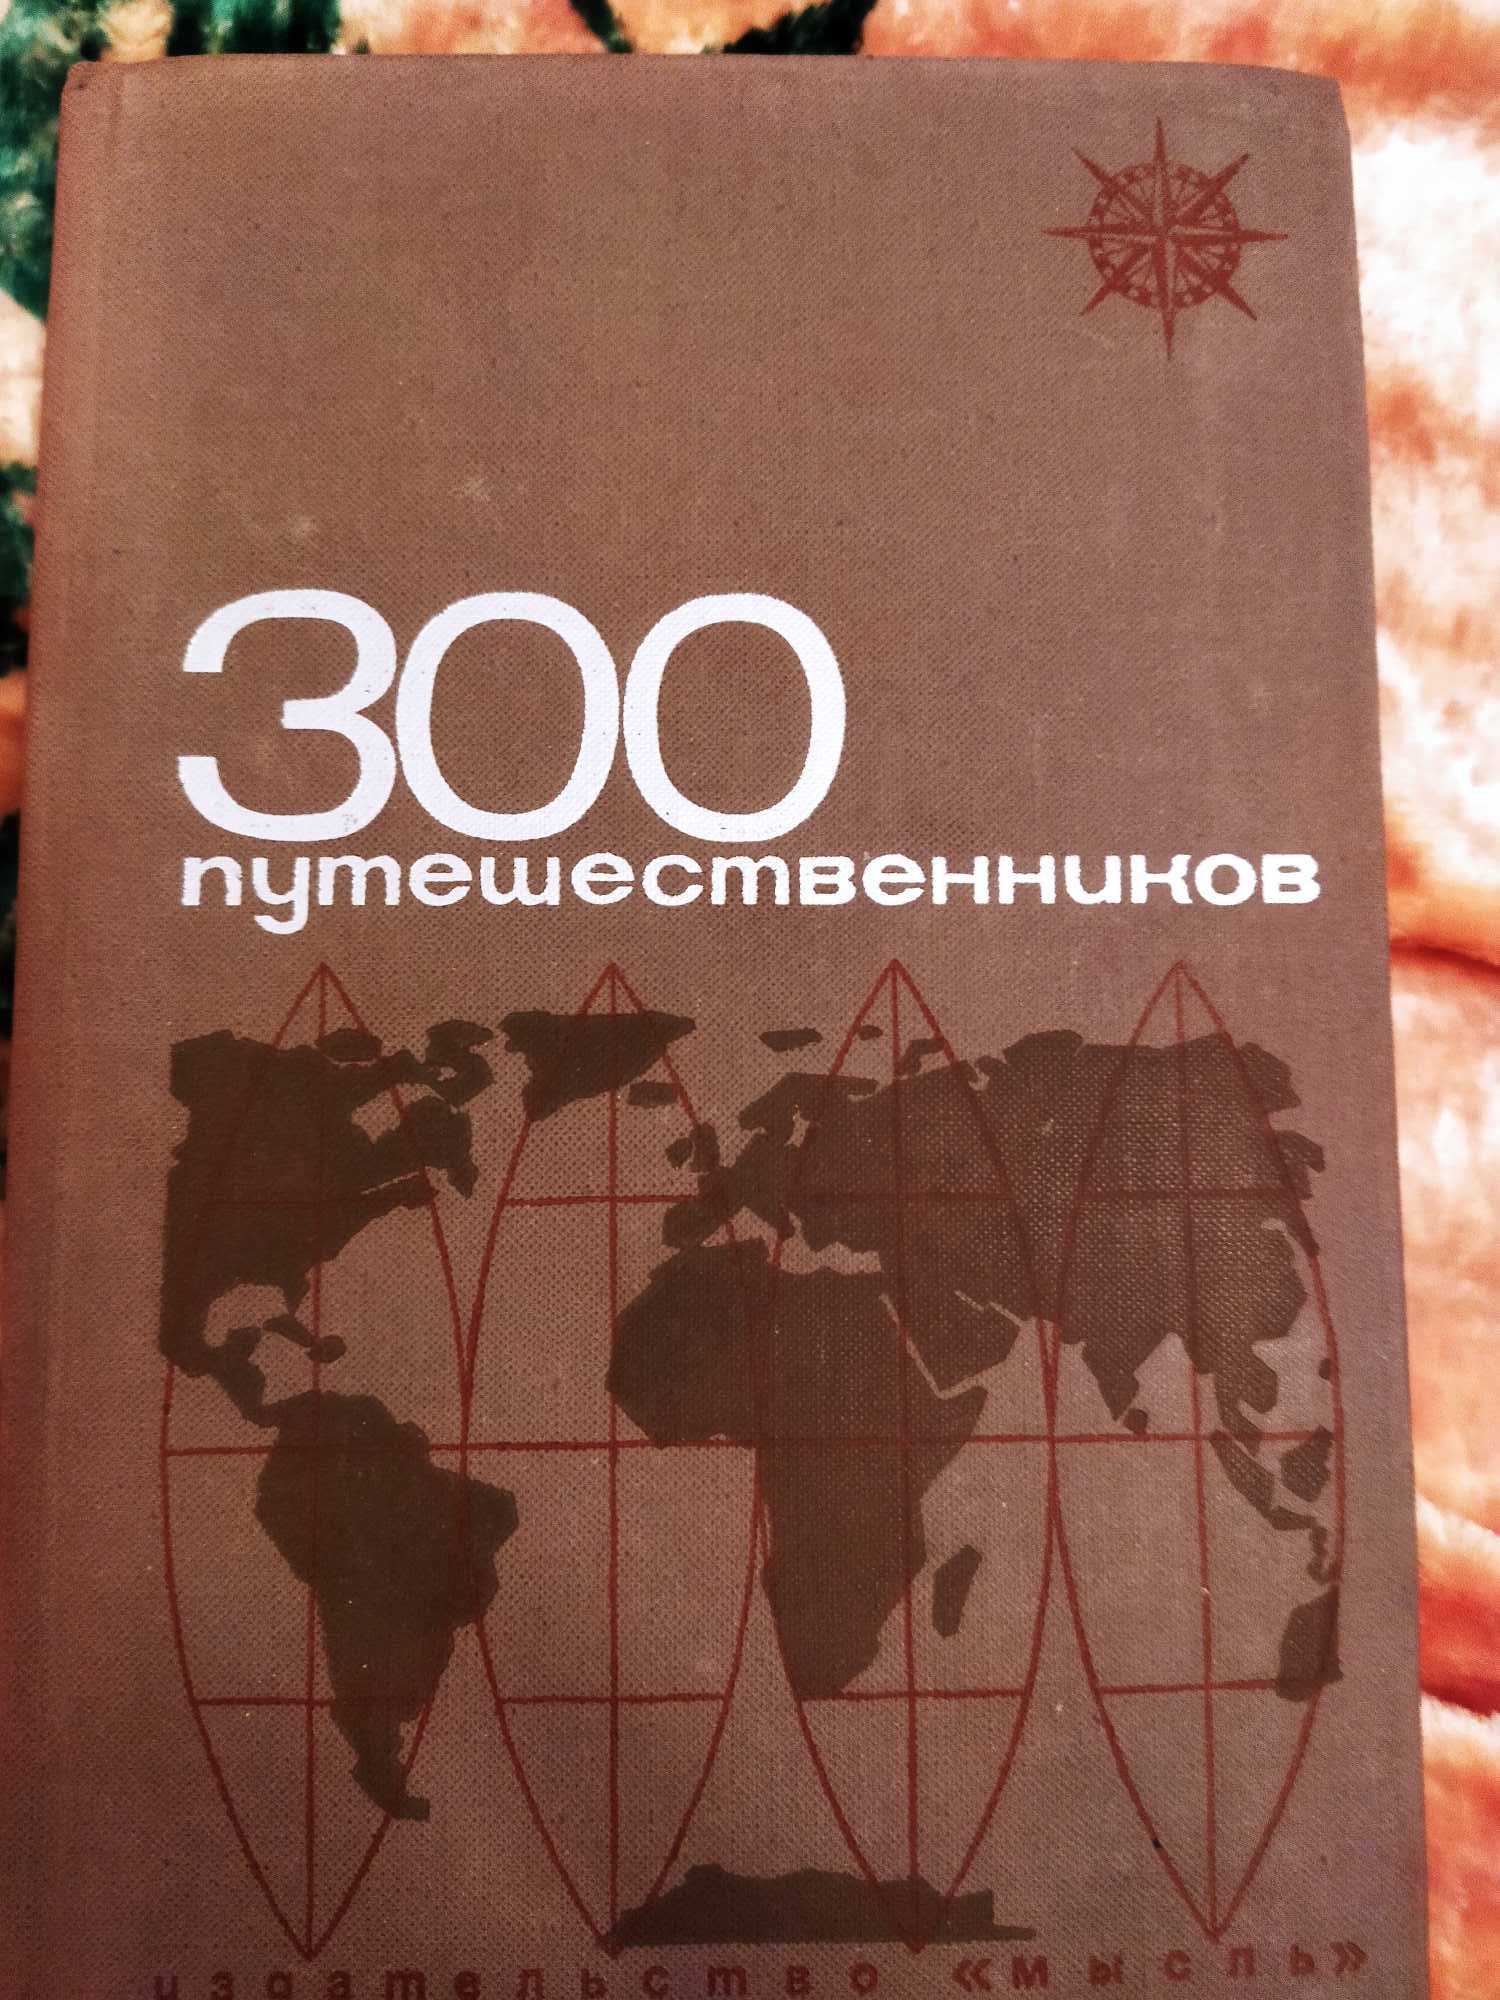 Справочник и Словари Топонимический и "300 путешественников"